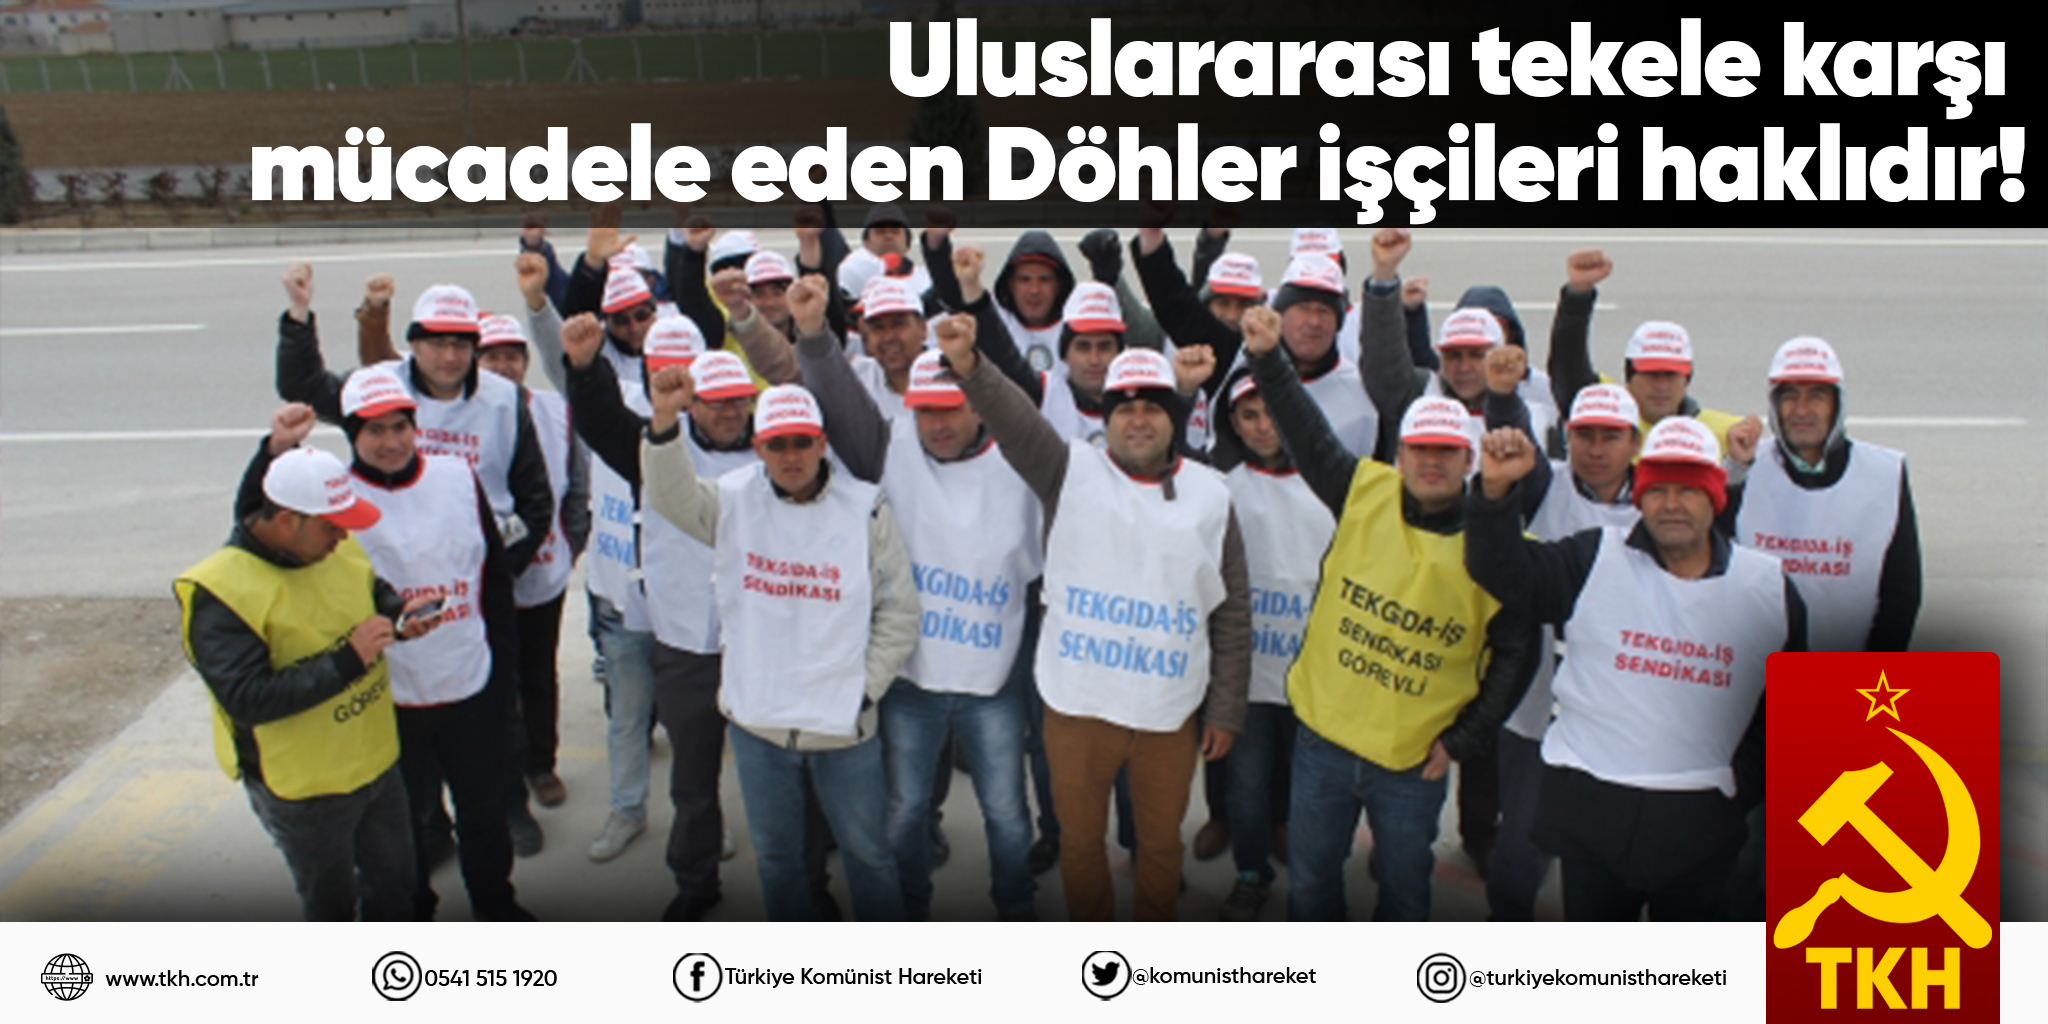 Uluslararası tekele karşı mücadele eden Döhler işçileri haklıdır!